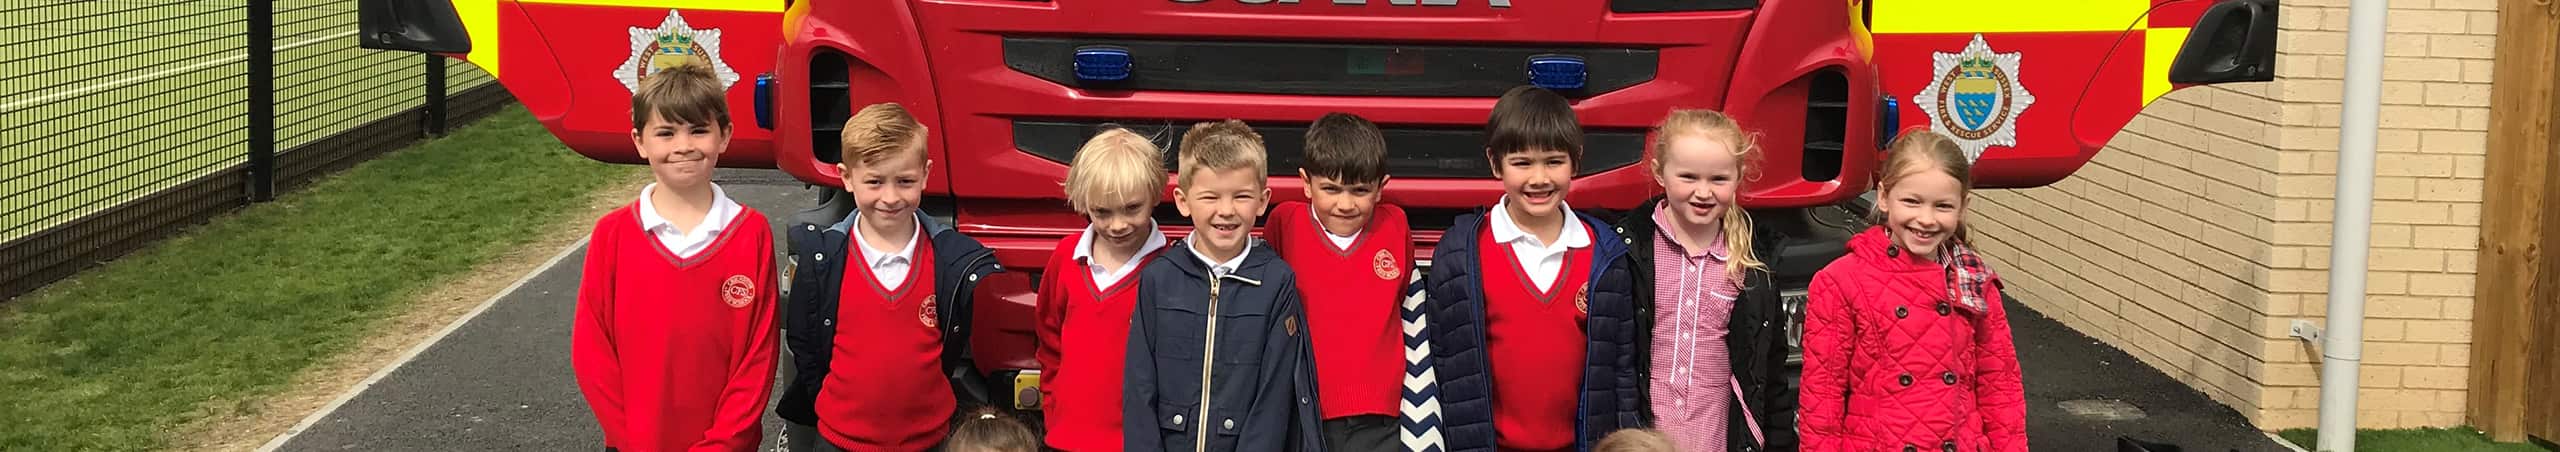 Chichester Free School children in fron of fire engine